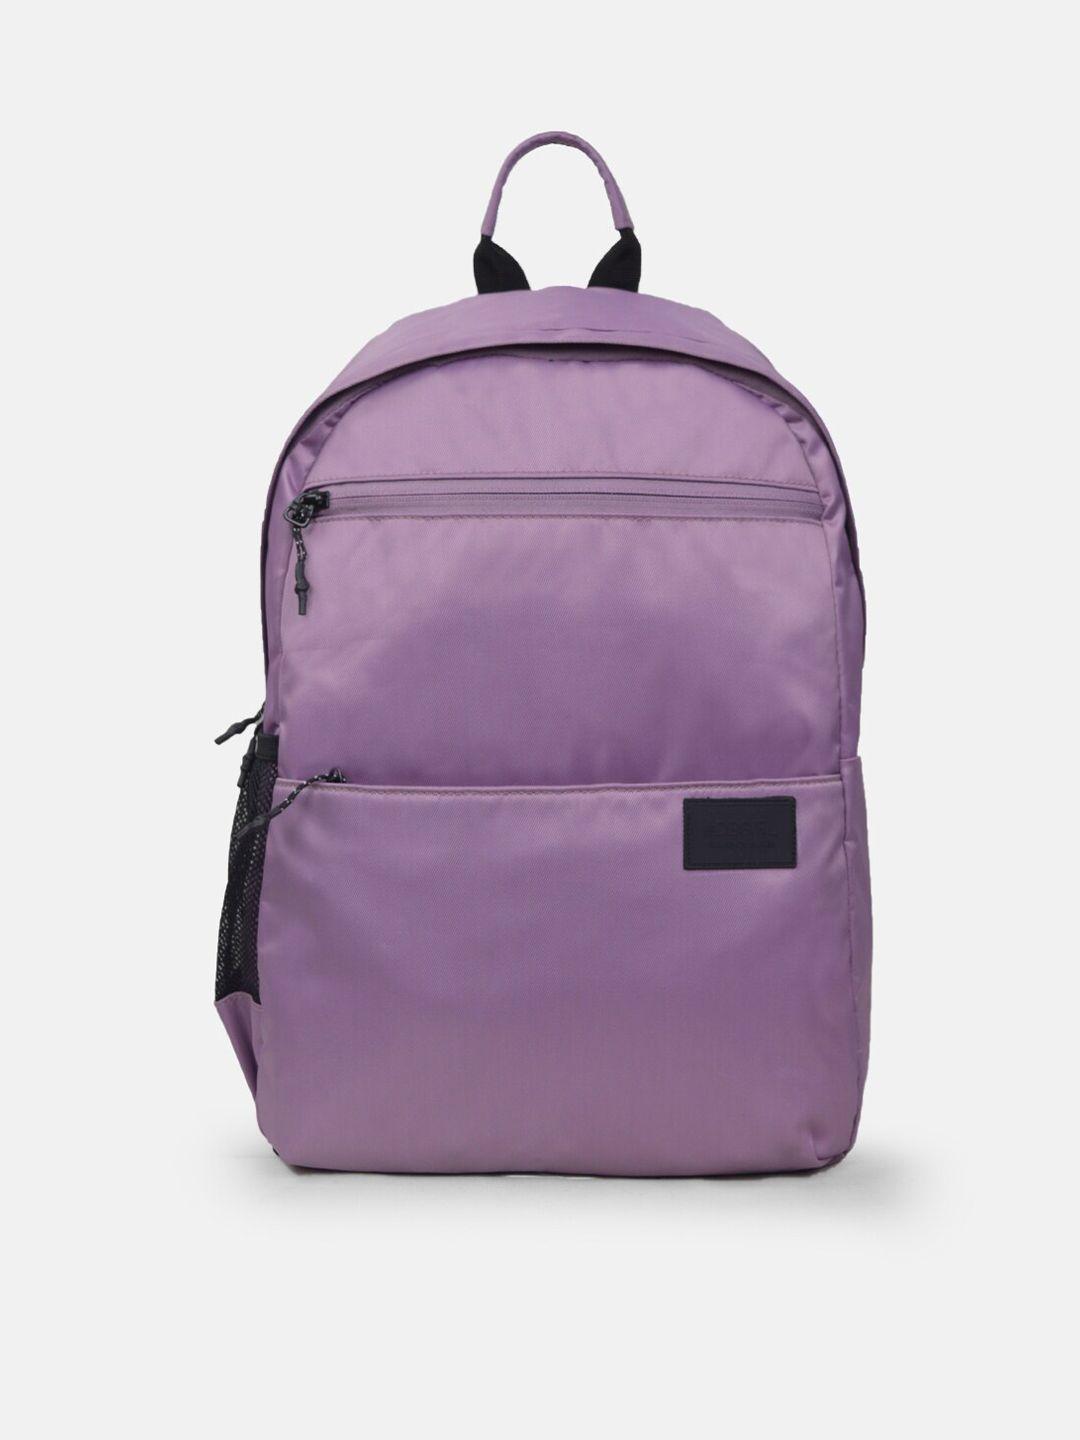 dressberry women purple laptop backpack